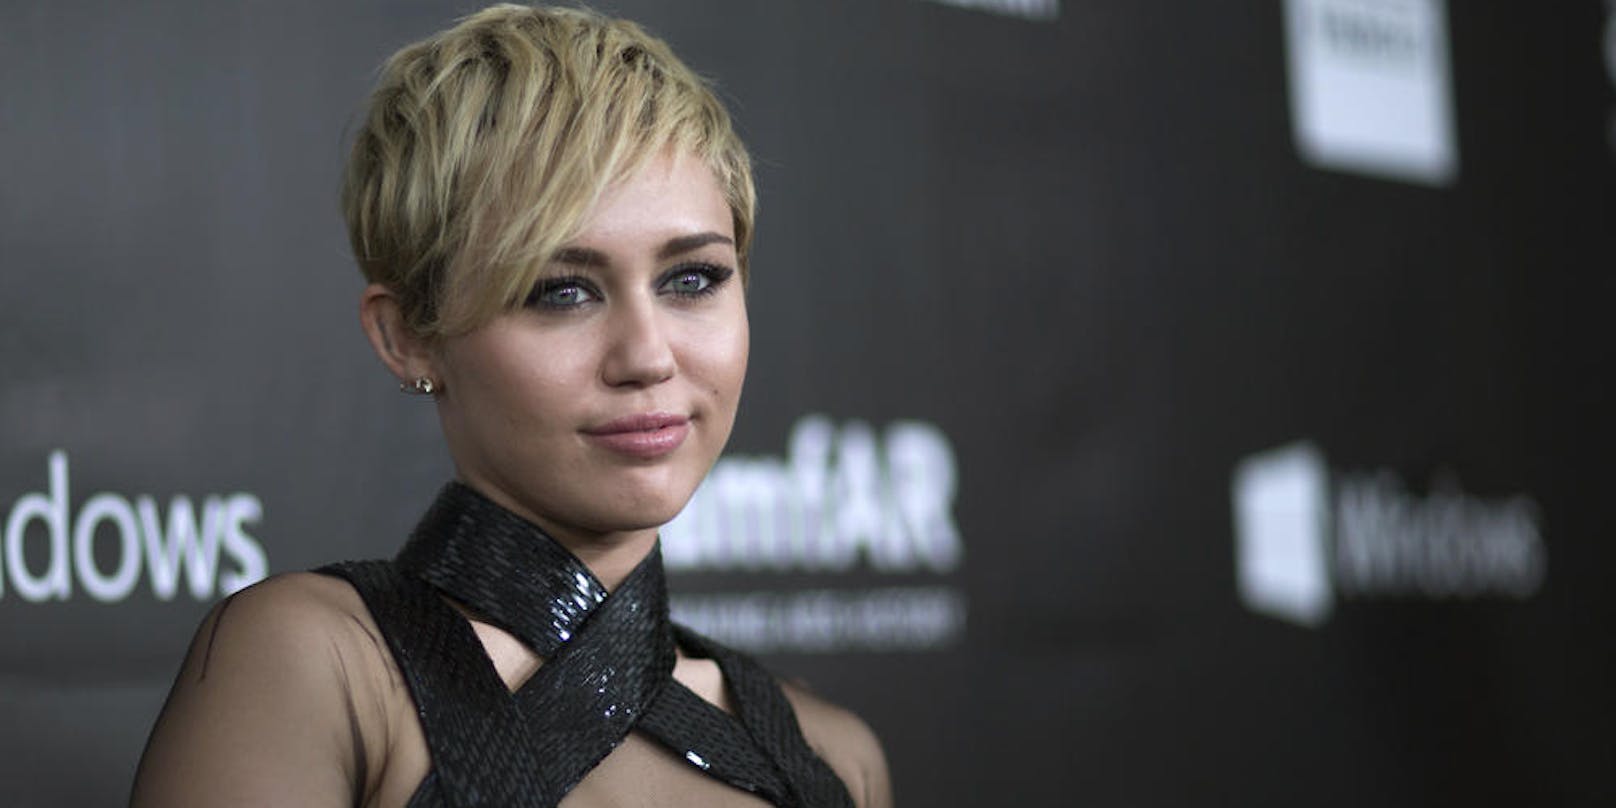 Miley Cyrus wendet sich über Instagram an ihre Fans: "Wir können nicht länger zusehen, jeder von uns muss seinen Teil dazu beitragen, dass Gerechtigkeit für alle Wirklichkeit wird"